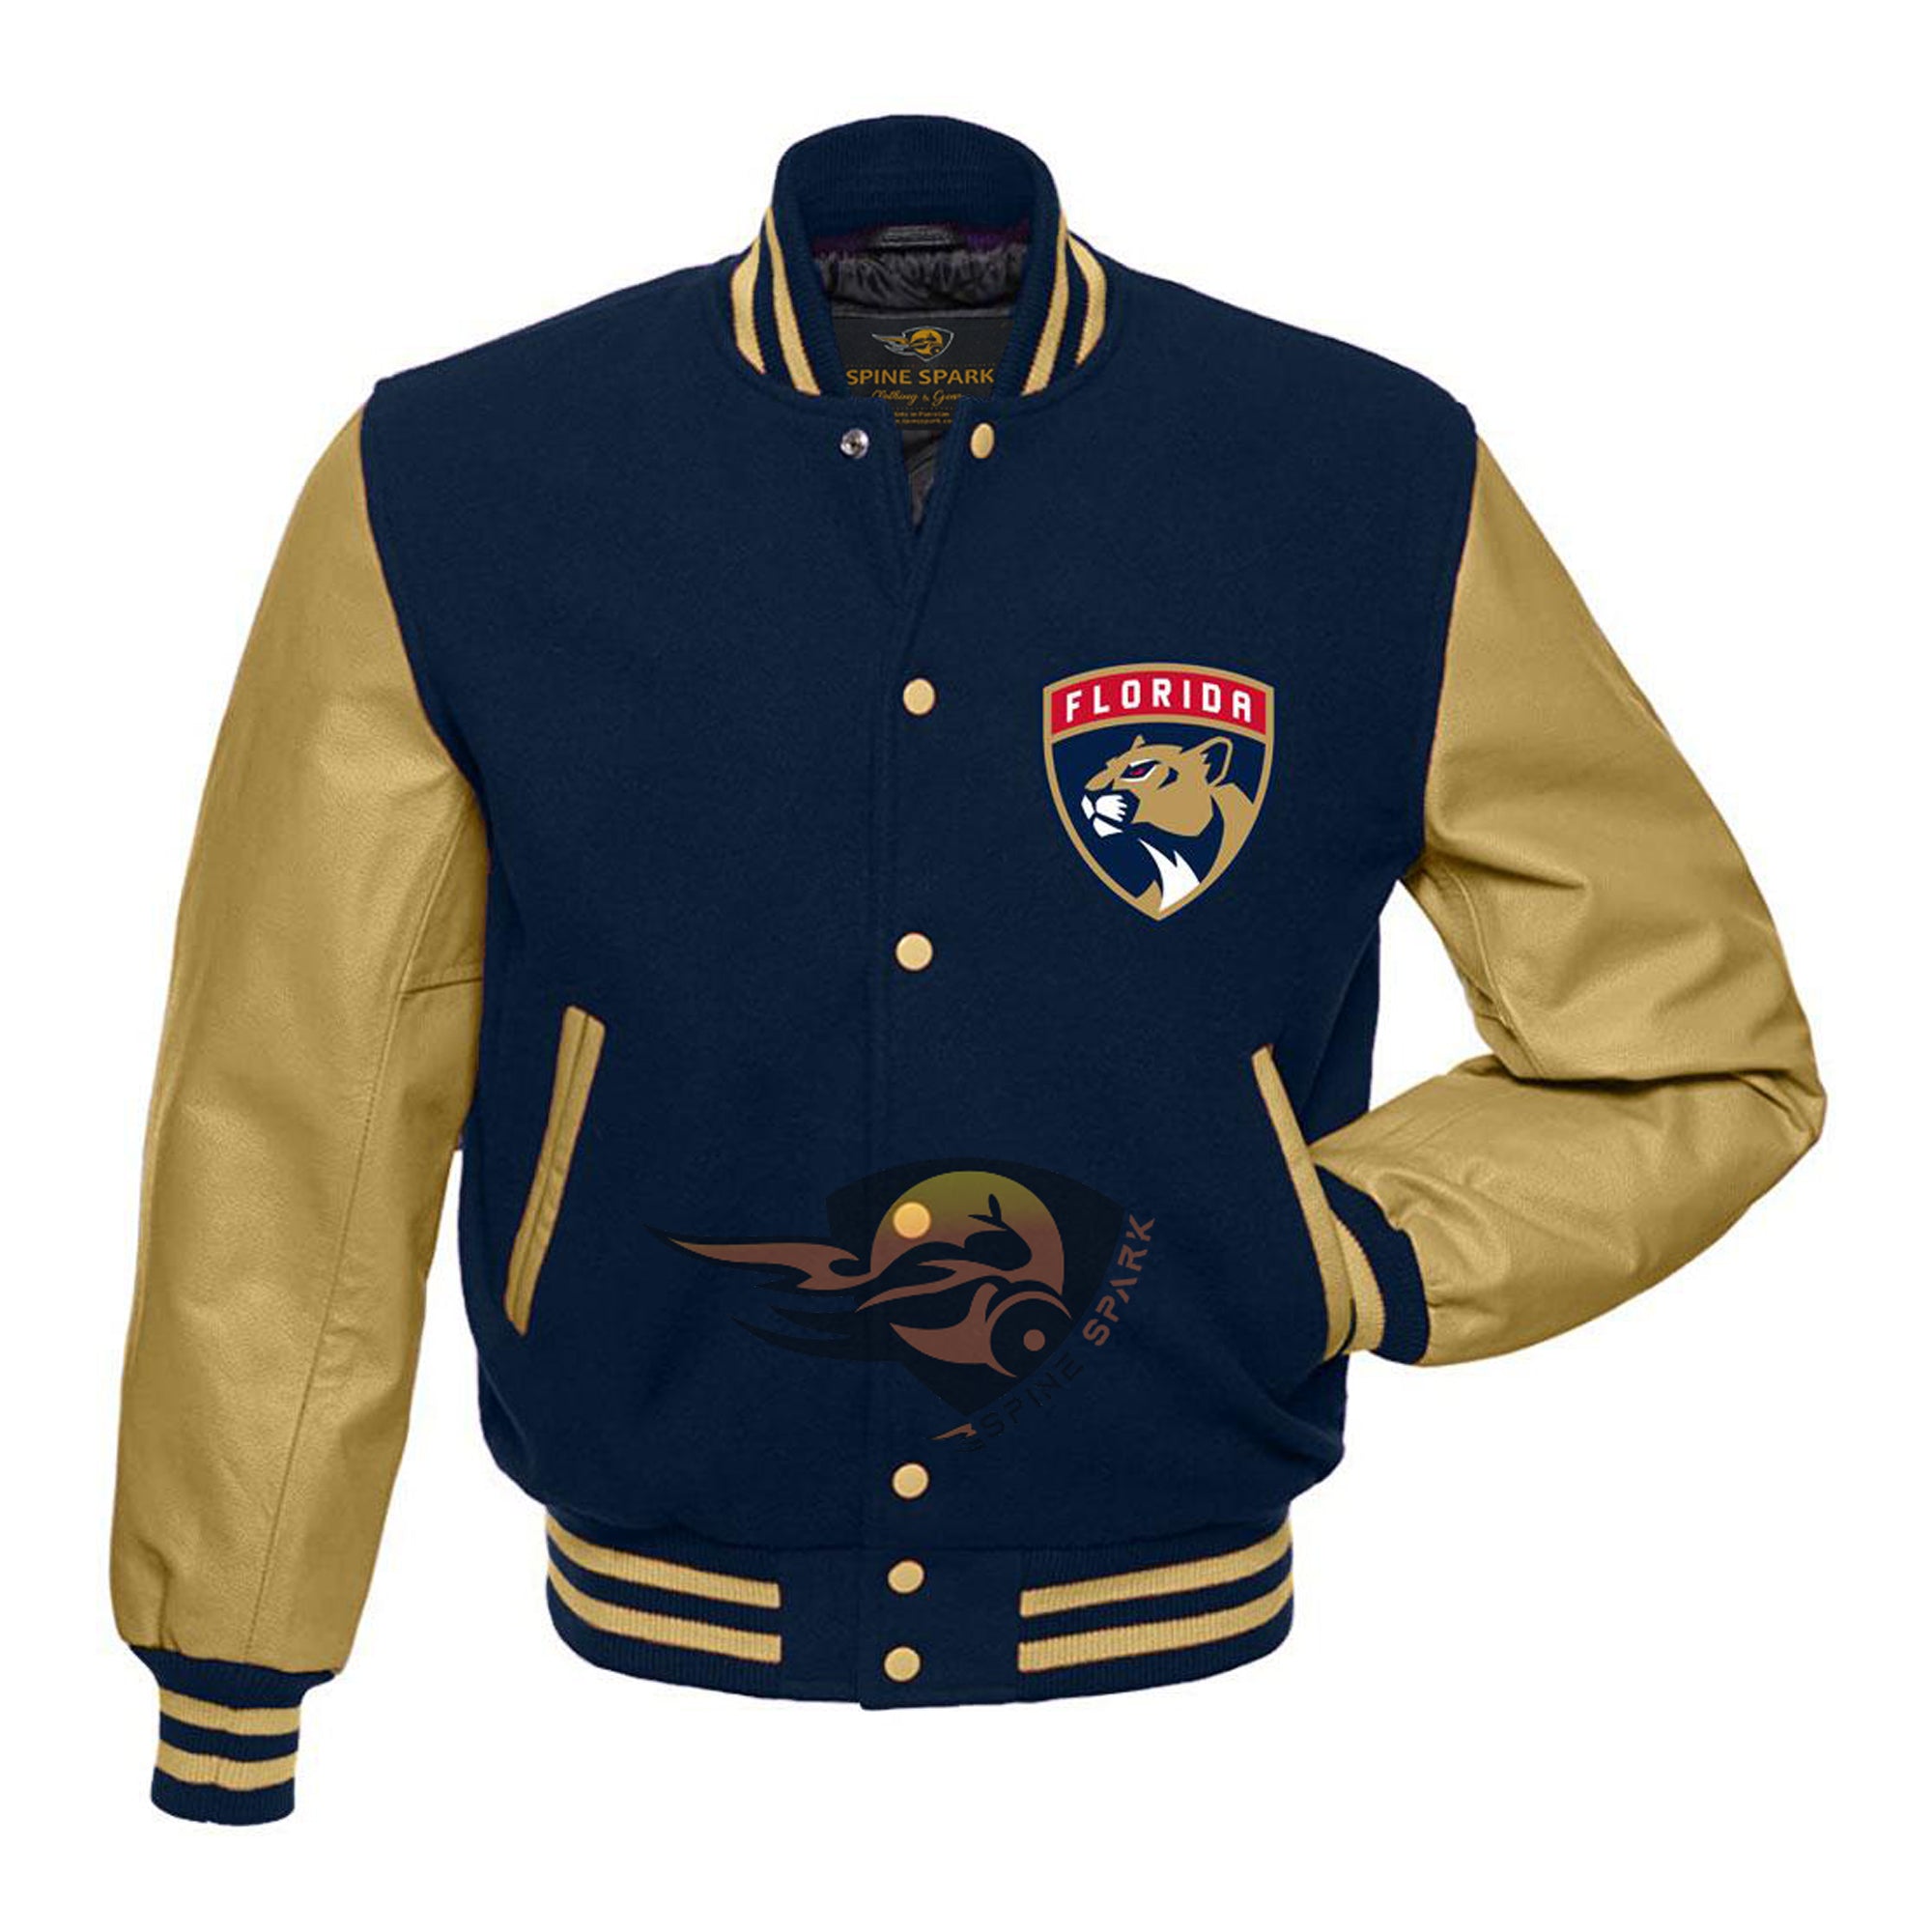 Navy Blue Florida Panthers Varsity NHL Jacket By SpineSpark